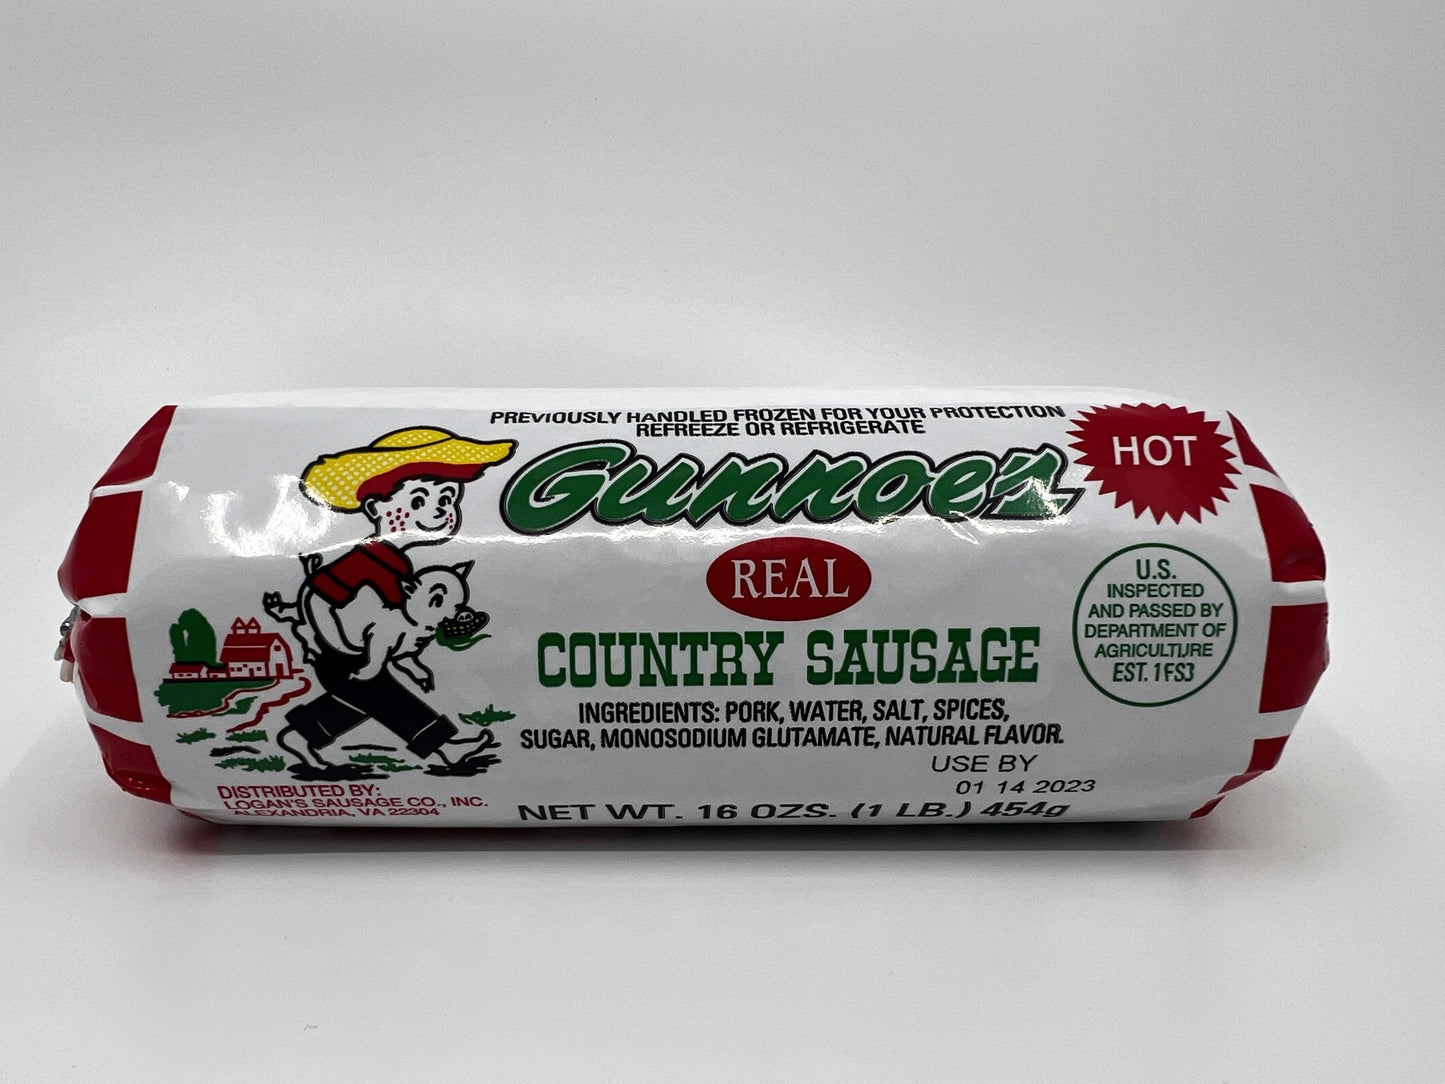 Gunnoe's Hot Country Sausage